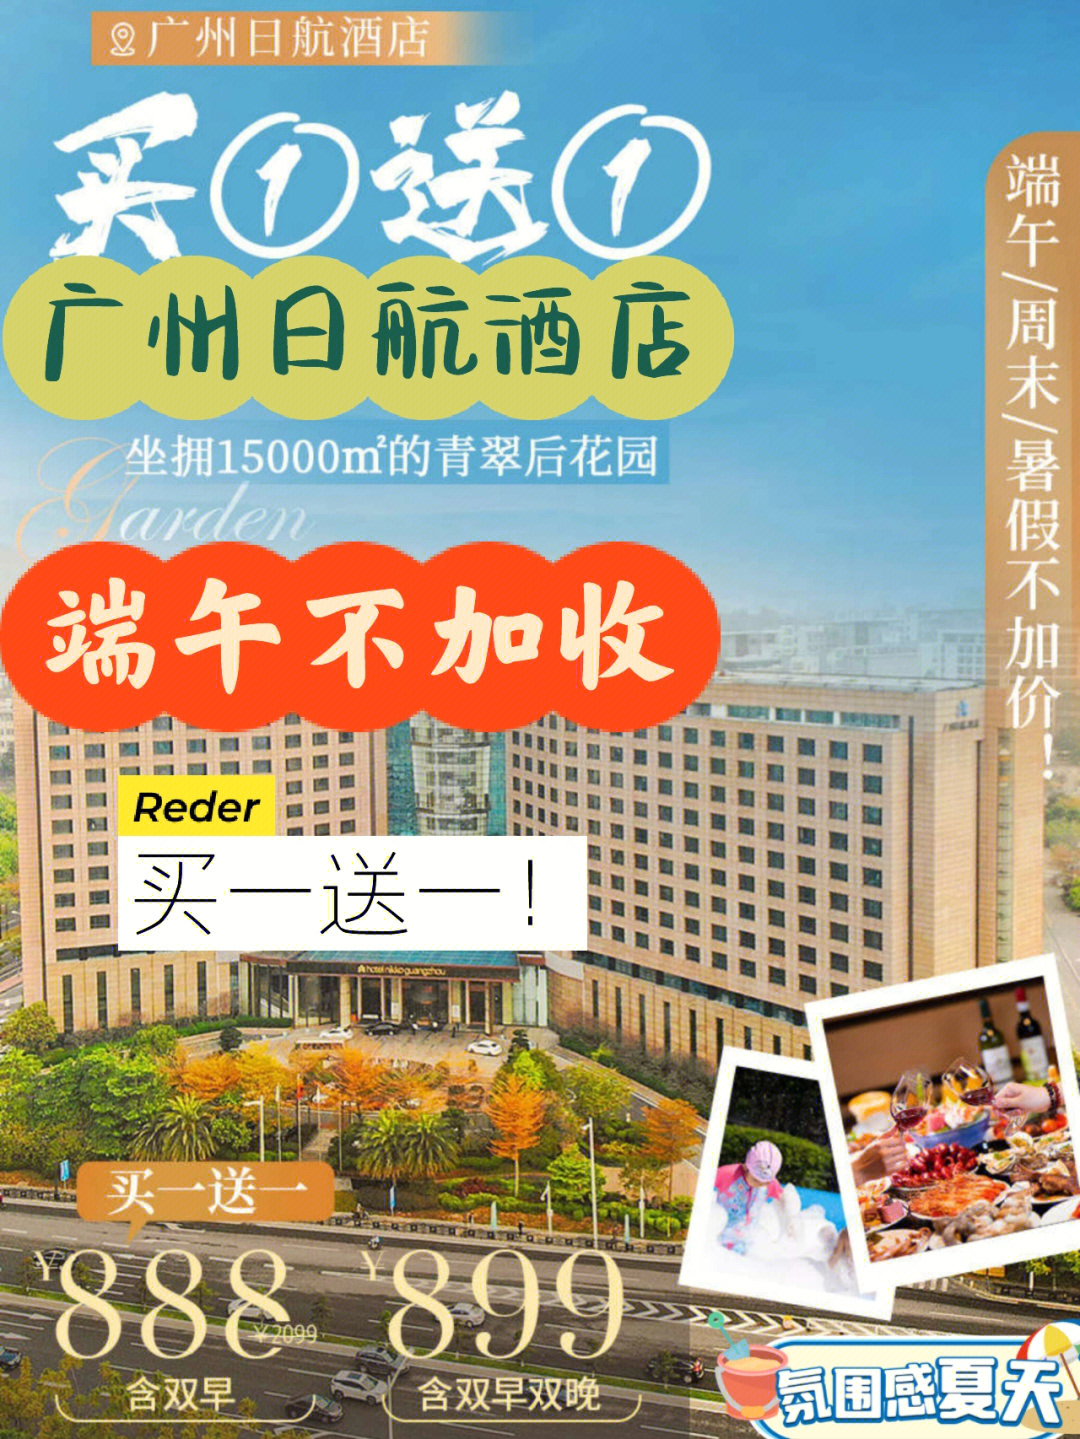 广州日航酒店月饼图片